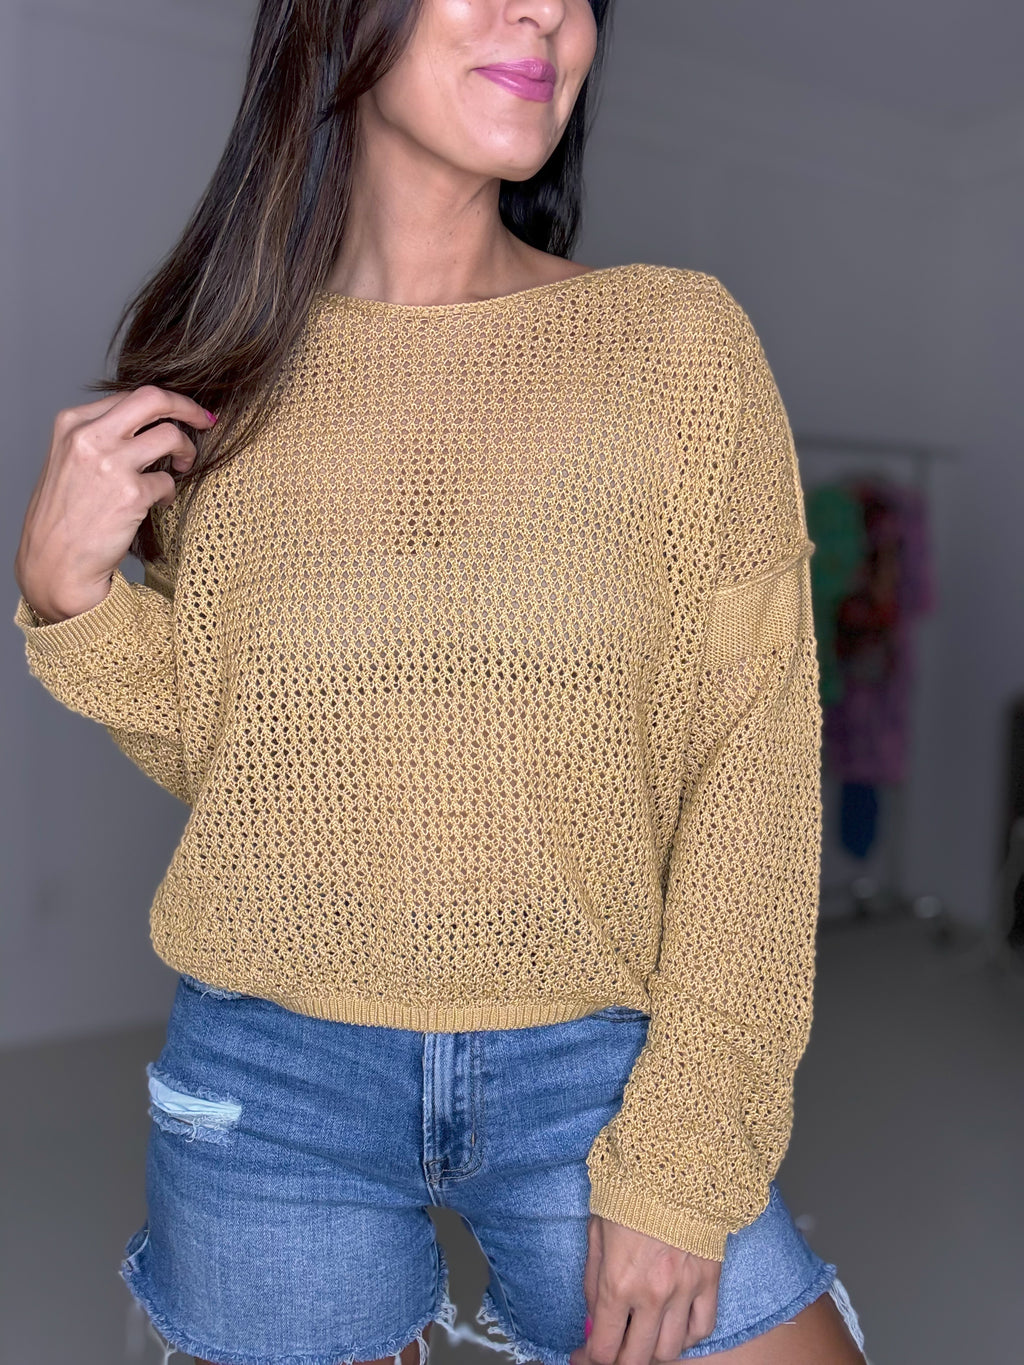 Sophie Summer Sweater (Camel)